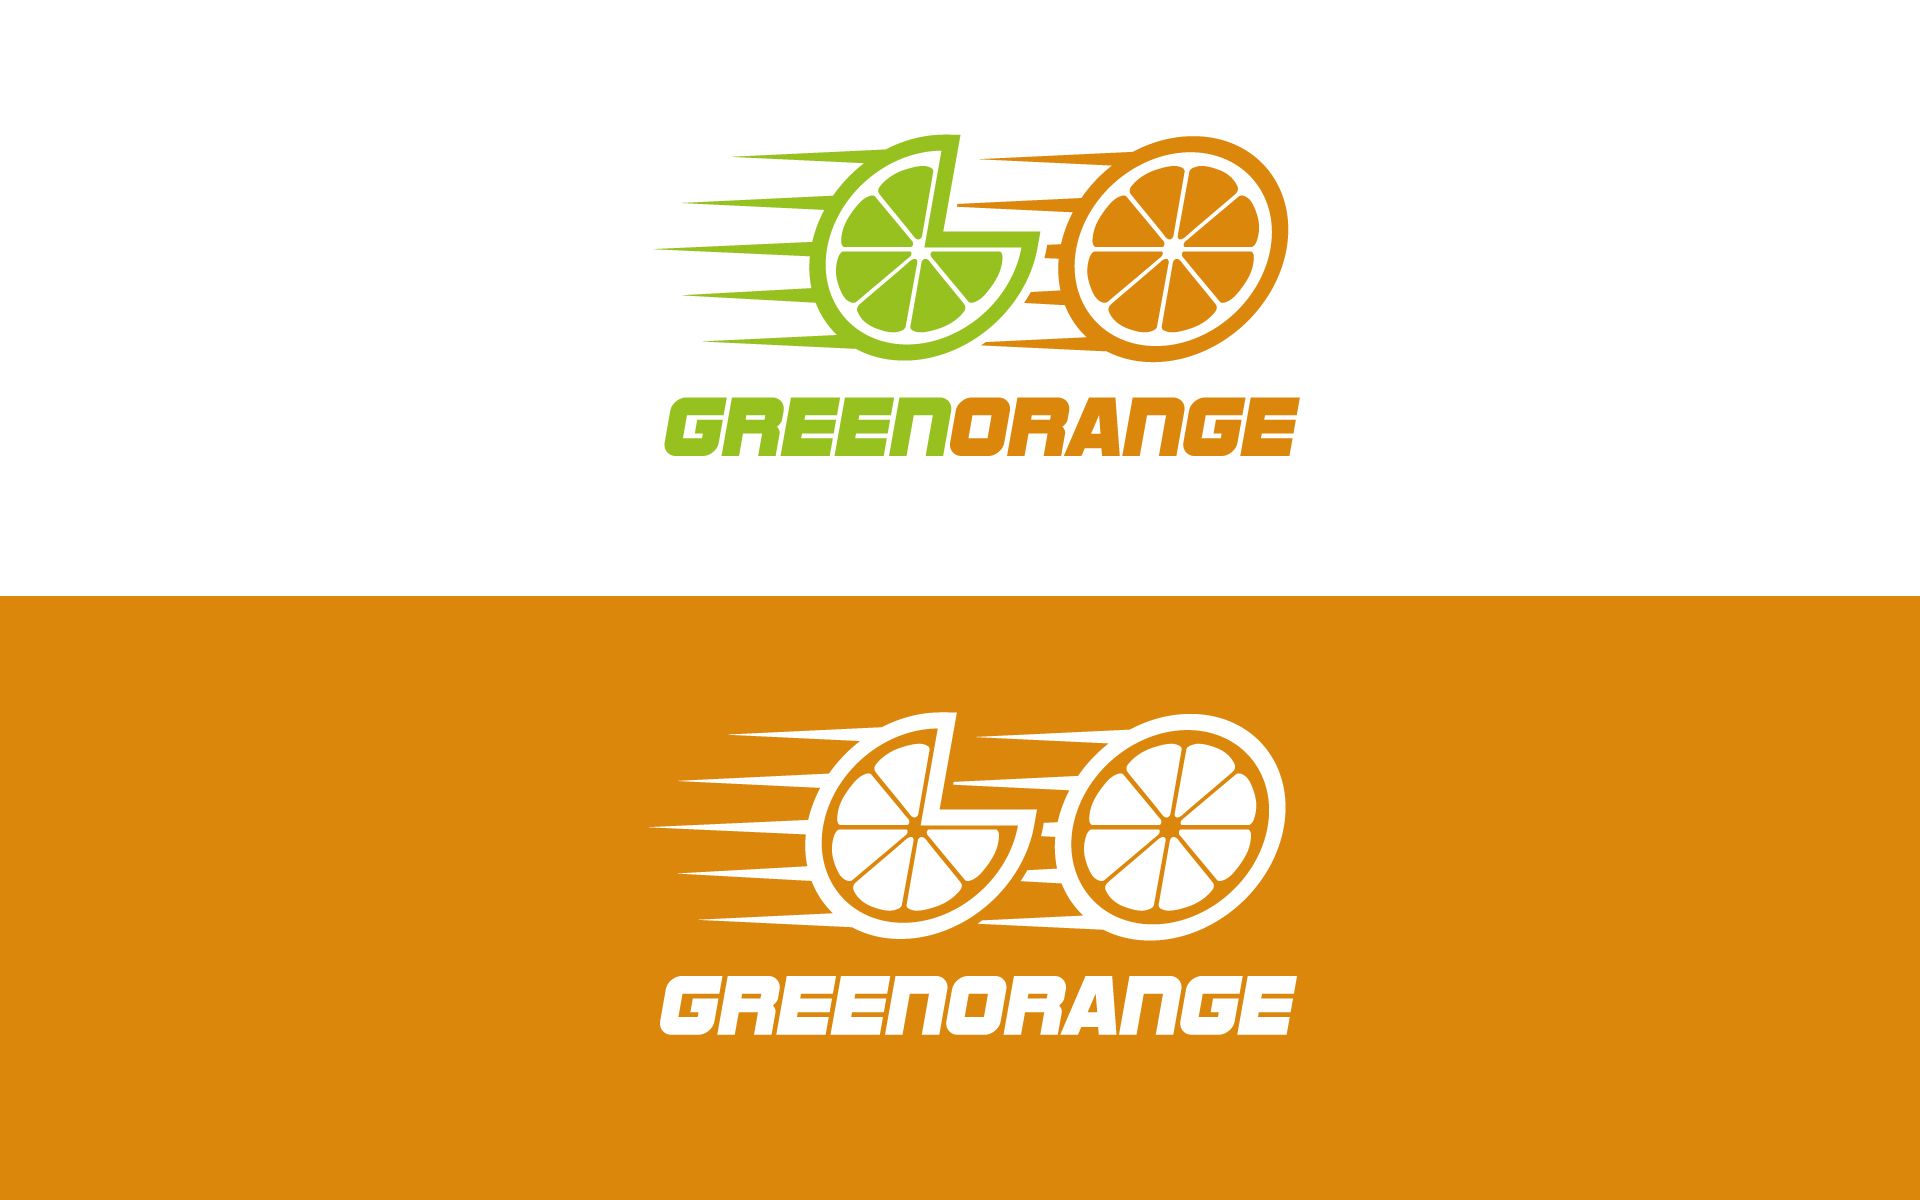 Логотип для гоночной команды (автоспорт) - дизайнер U4po4mak